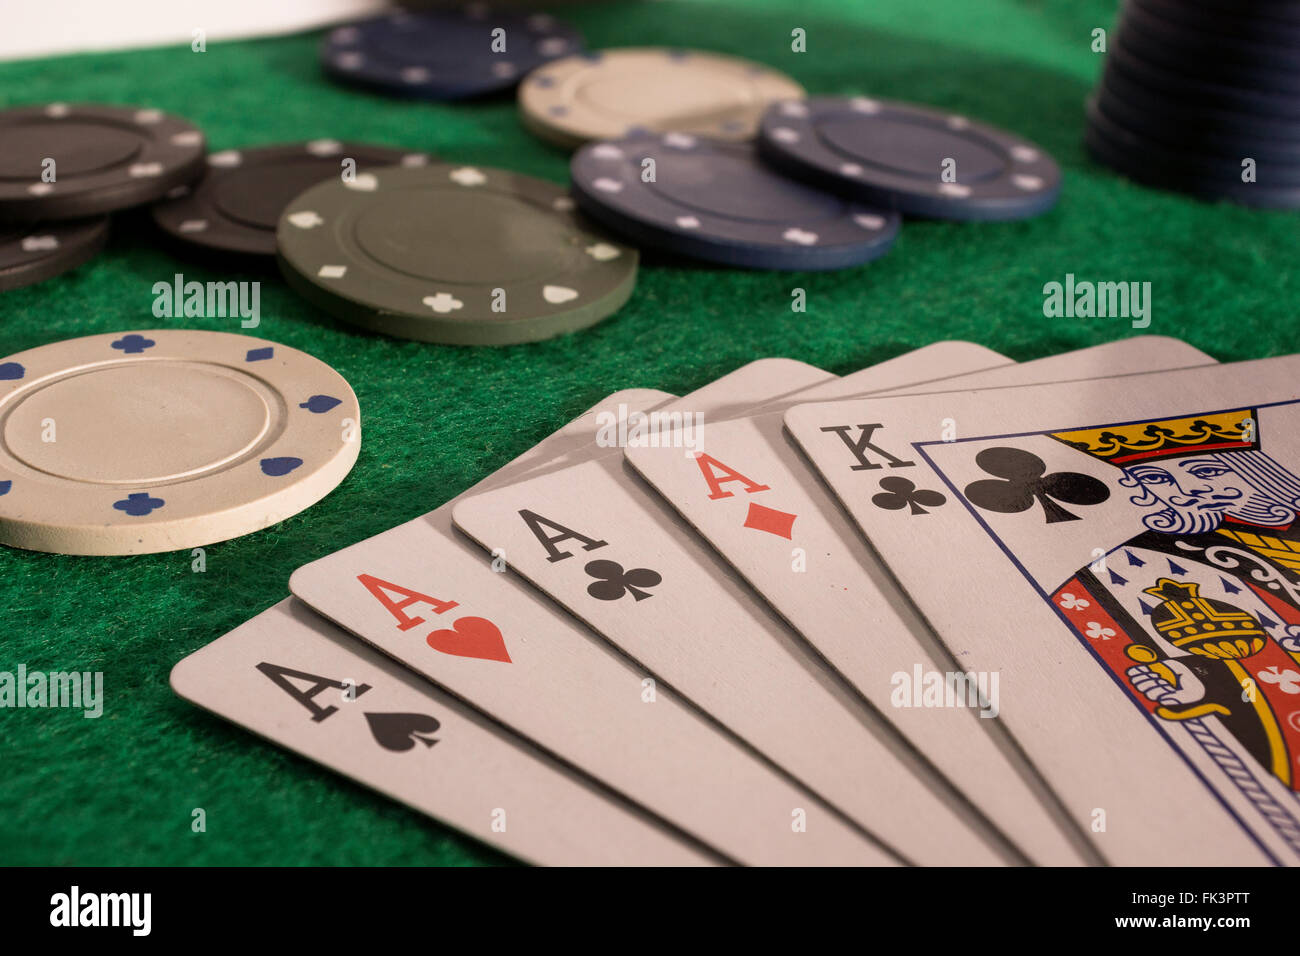 Le Jeu De Poker Passionnant Se Déroule Sur Une Table Verte